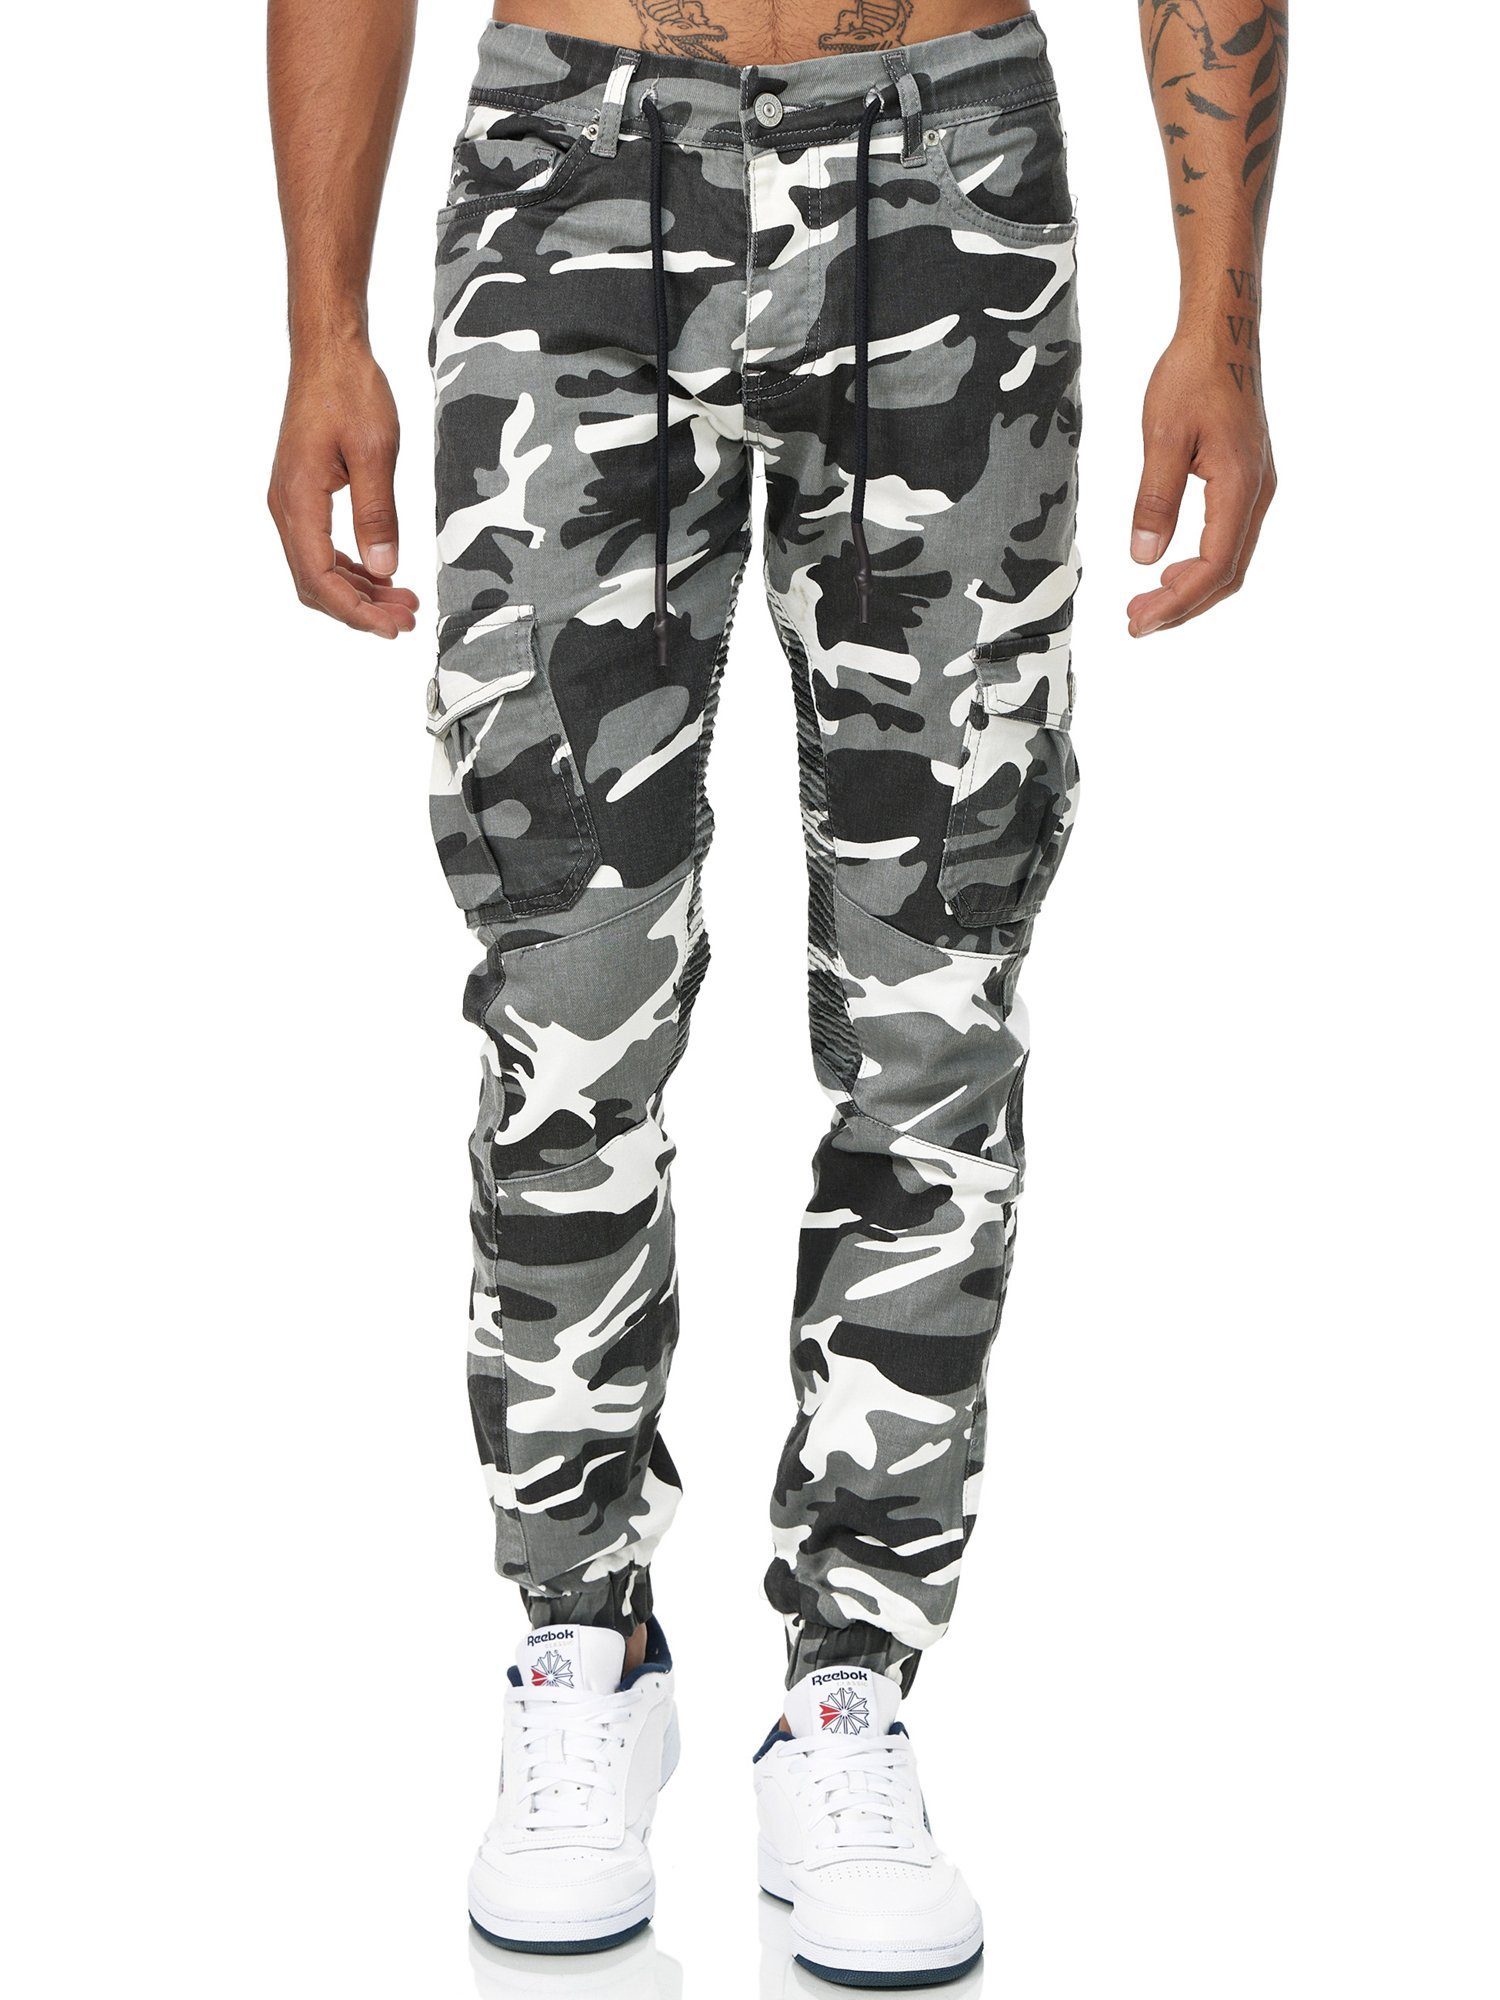 Slim Herren Camouflage Code47 Slim Jeans Männer Chinohose Hose Slim-fit-Jeans 3207C Weiß Fit Designer Chino